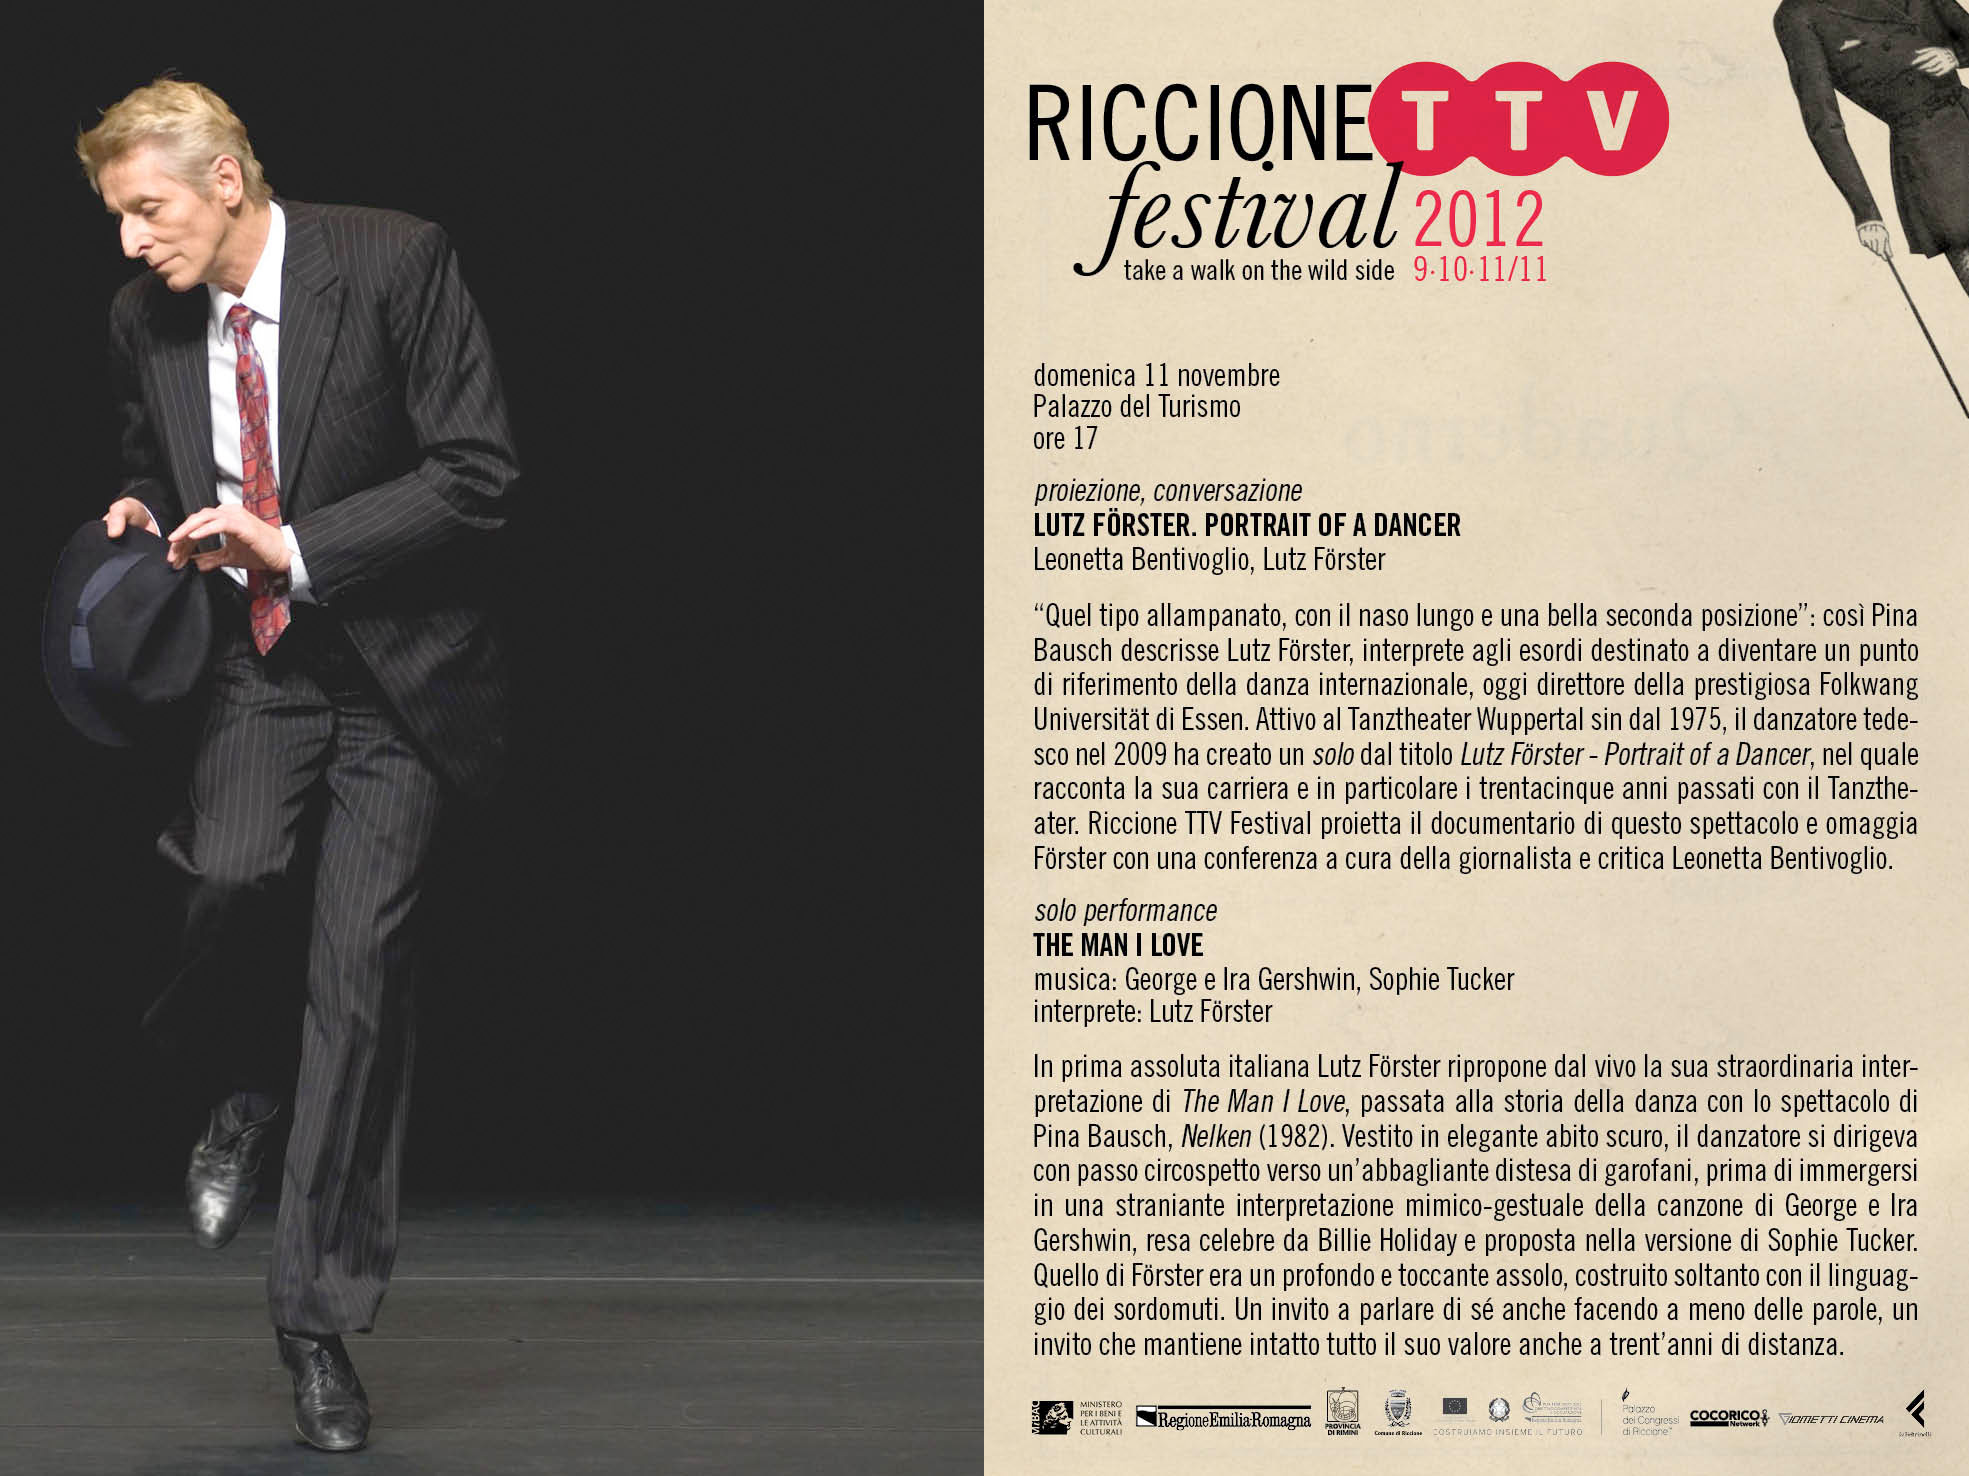 Riccione TTV festival 2012